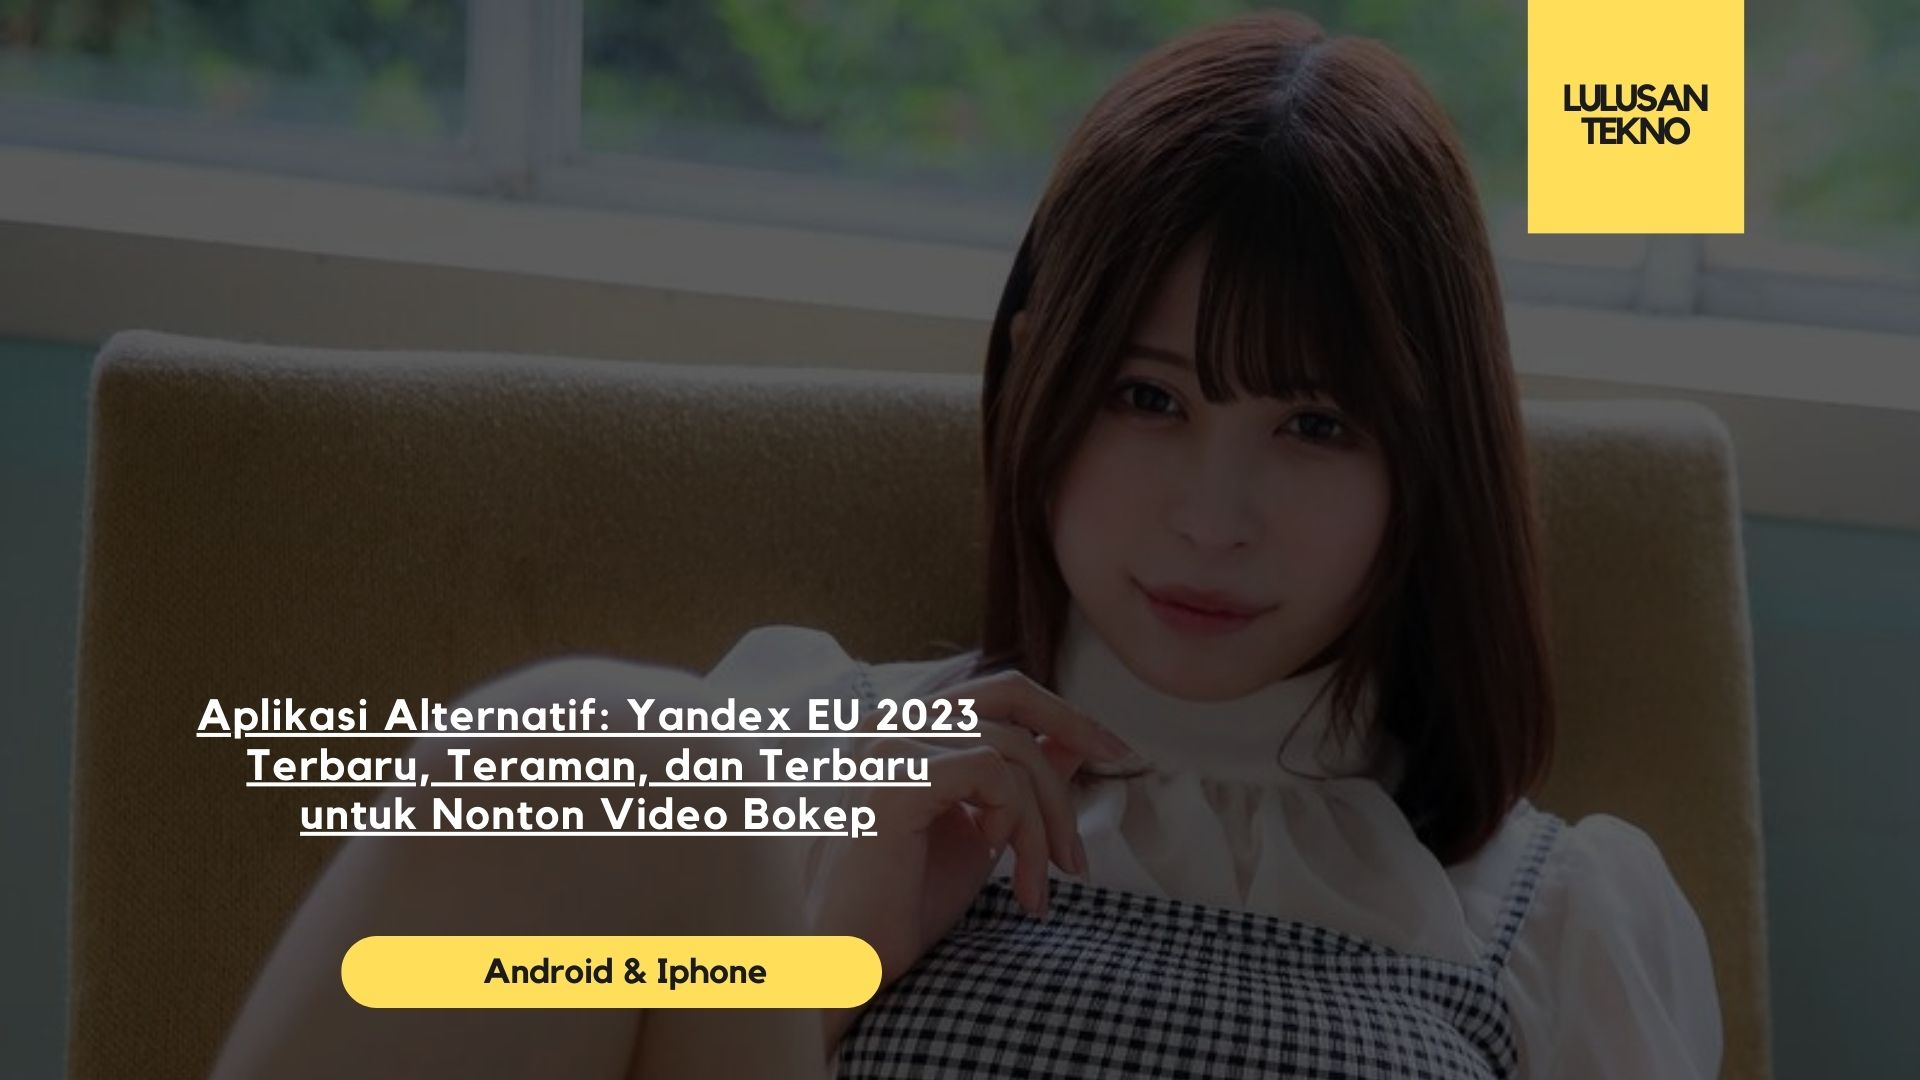 Aplikasi Alternatif: Yandex EU 2023 Terbaru, Teraman, dan Terbaru untuk Nonton Video Bokep